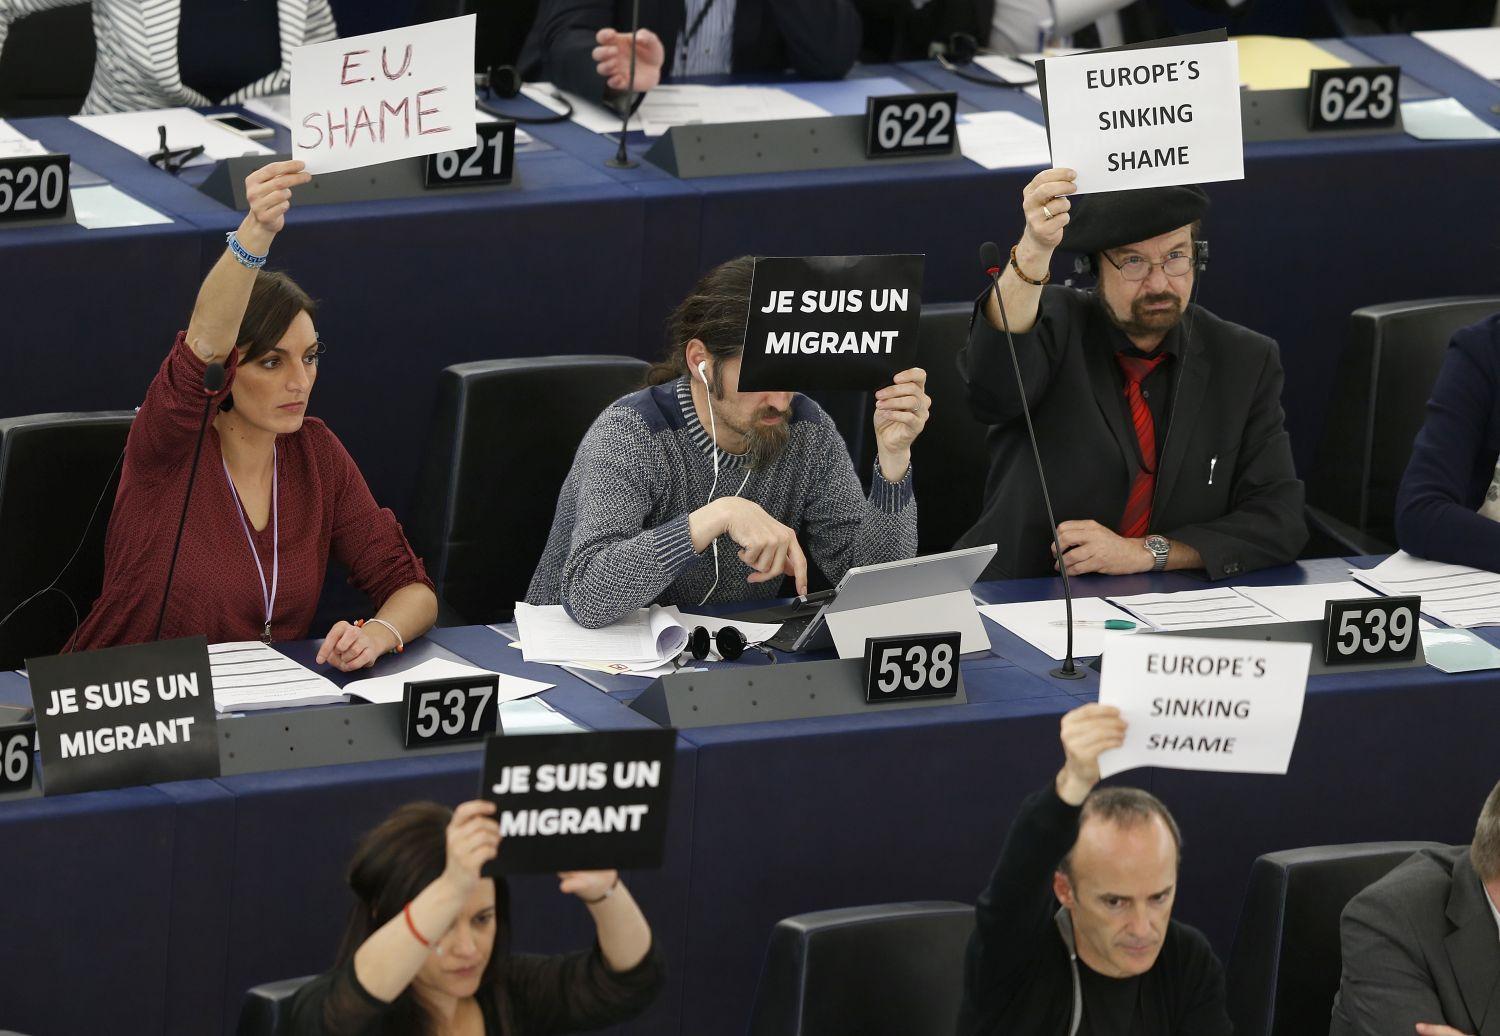 'Bevándorló vagyok' feliratú transzparensekkel tiltakoztak az Európai Parlamentben tartott legutóbbi migráns-vitán